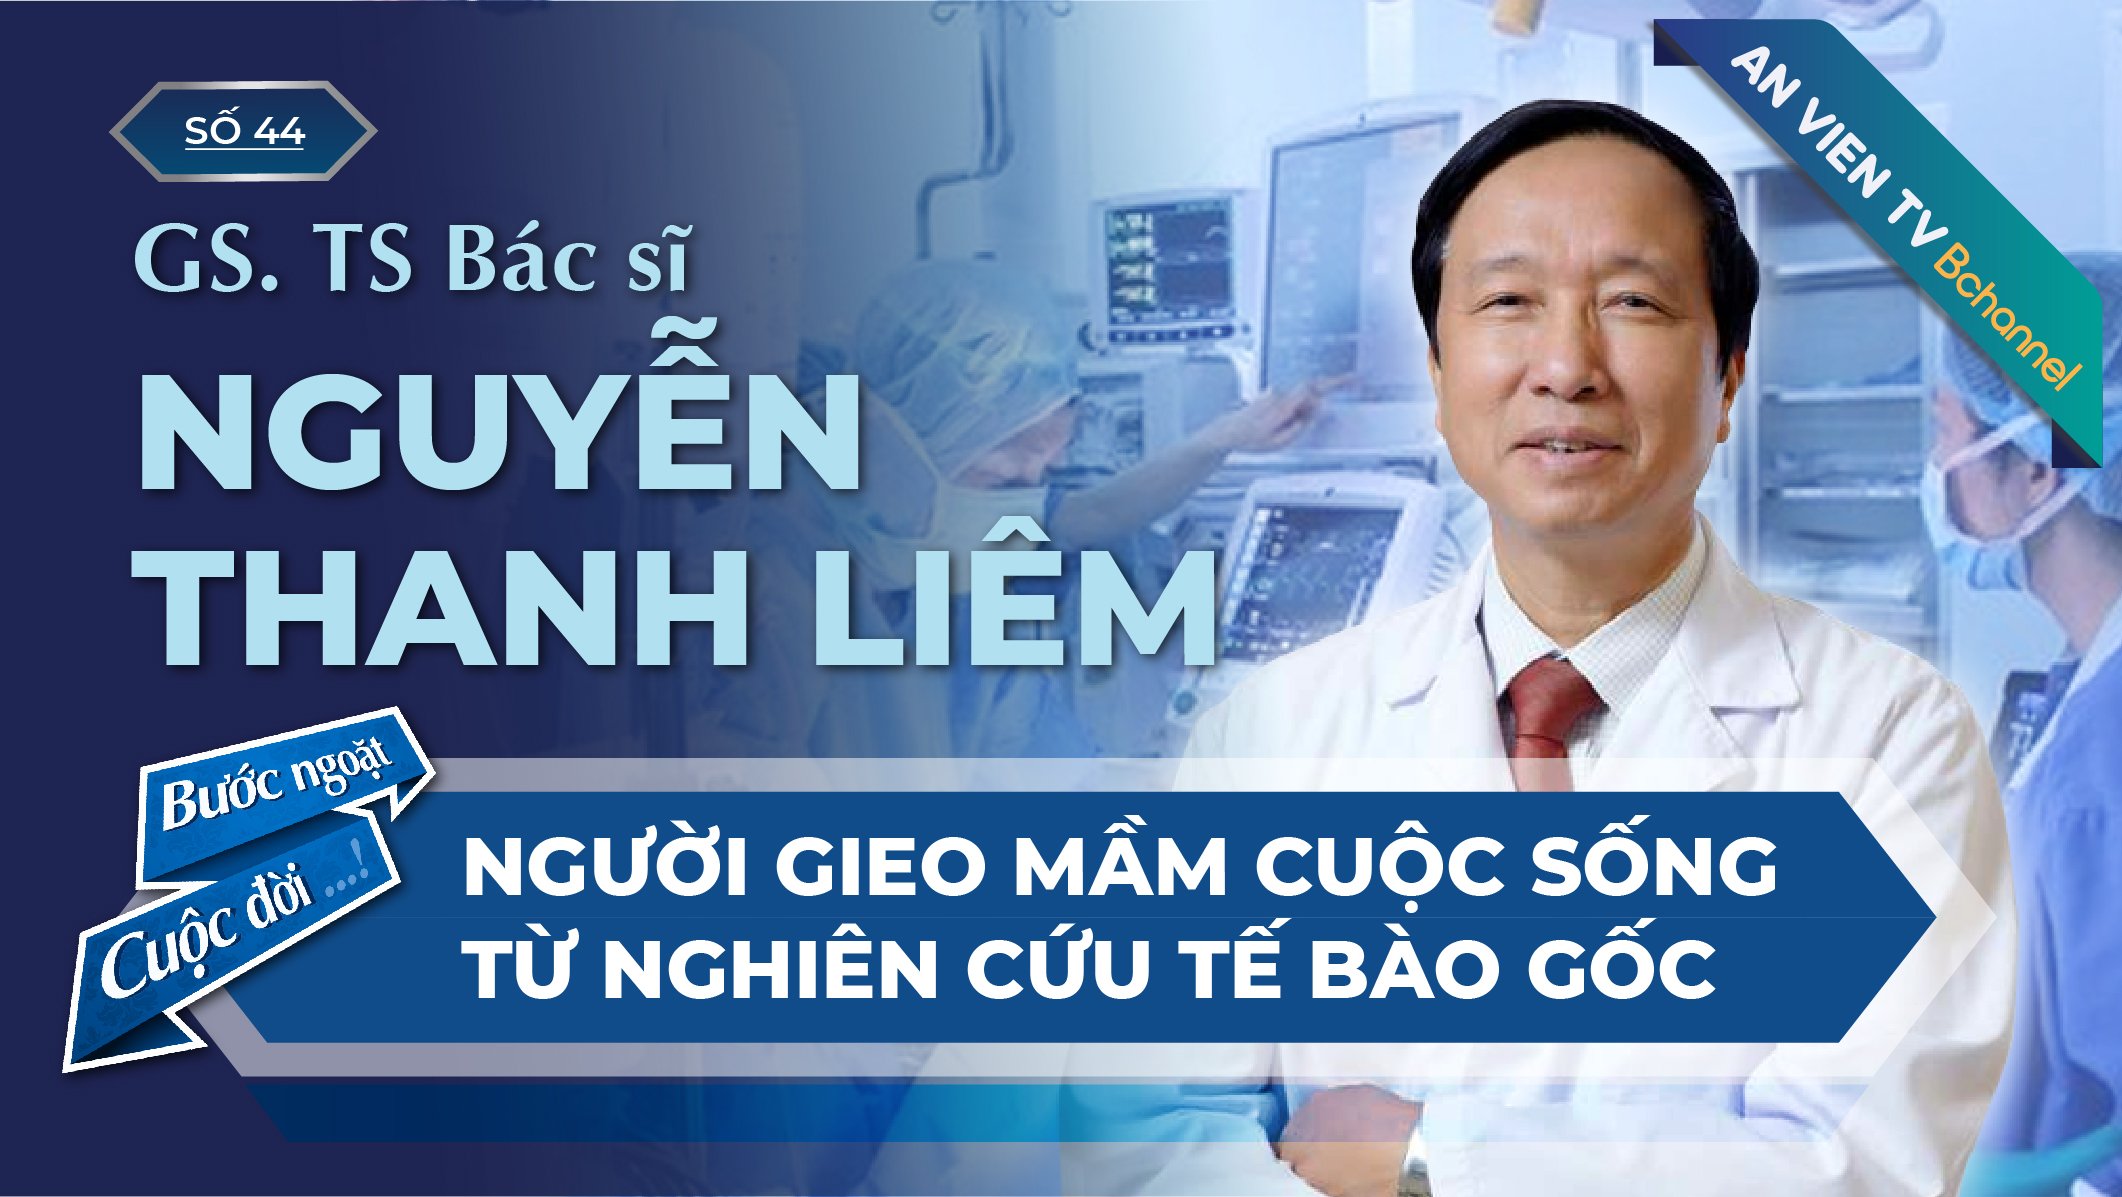 GS. TS Nguyễn Thanh Liêm  - Người gieo mầm cuộc sống| Bước Ngoặt Cuộc Đời Số 44